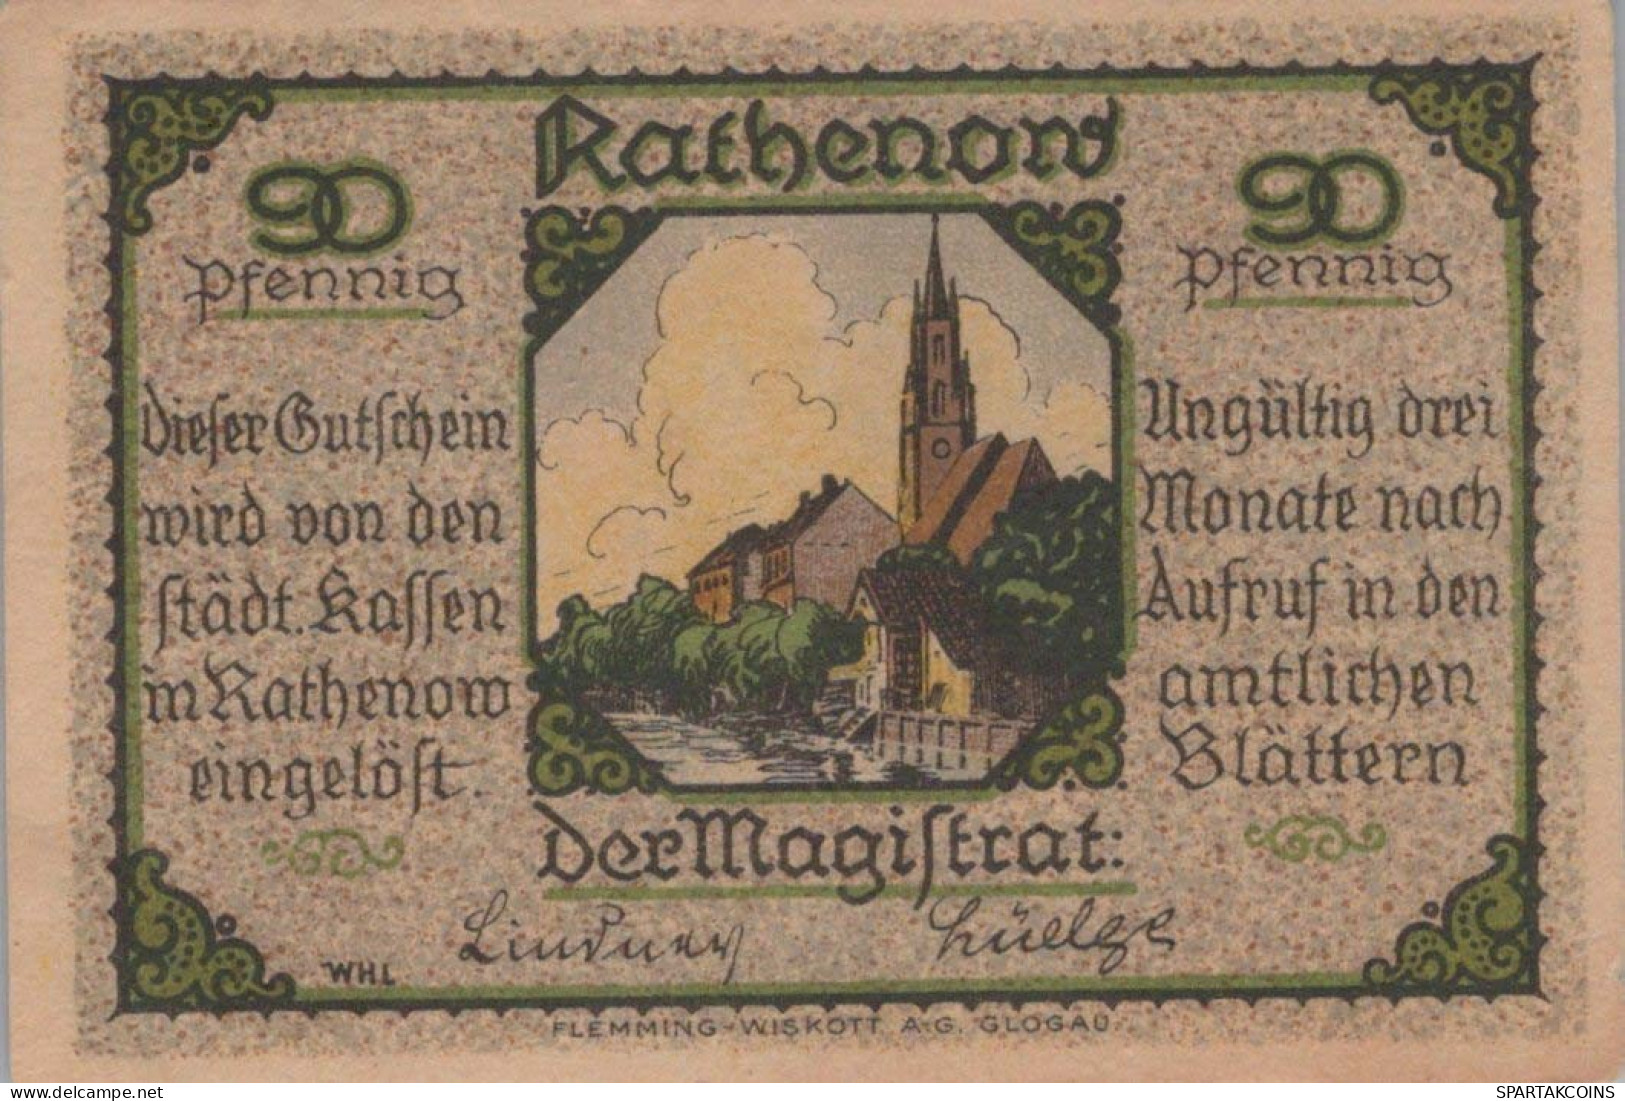 90 PFENNIG Stadt RATHENOW Brandenburg UNC DEUTSCHLAND Notgeld Banknote #PH315 - [11] Local Banknote Issues